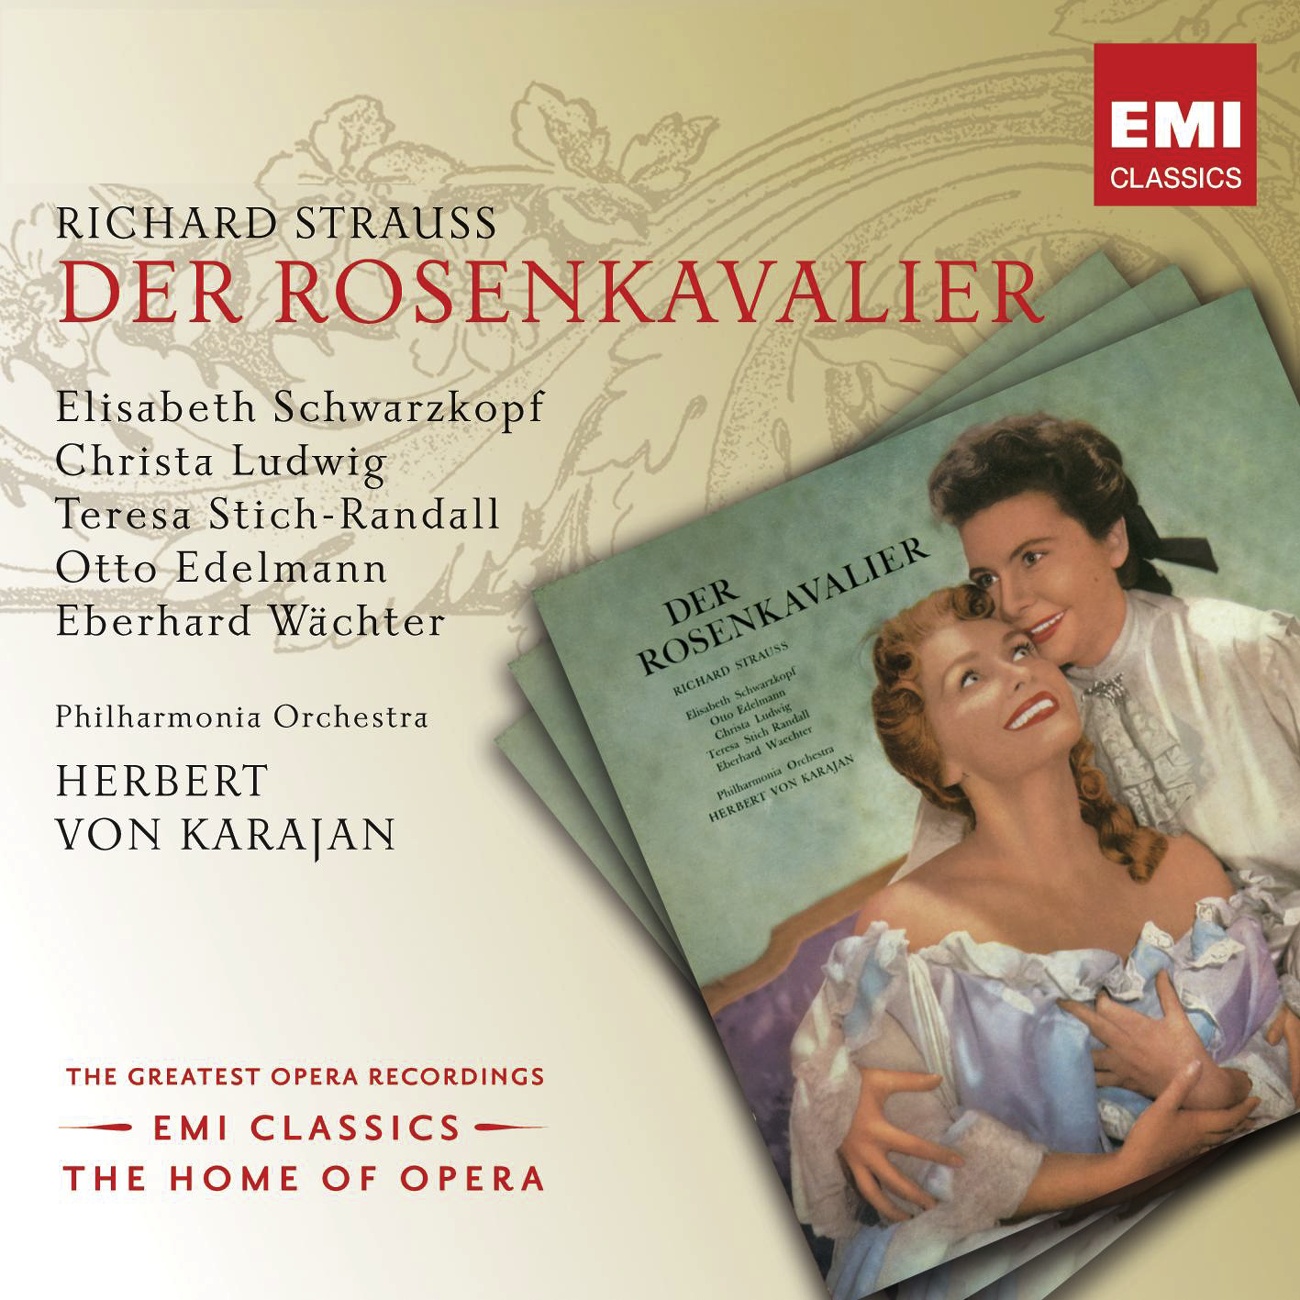 Der Rosenkavalier 2001 Digital Remaster, Act III: Heut' oder morgen oder den ü bern chsten Tag Sophie Octavian Marschallin